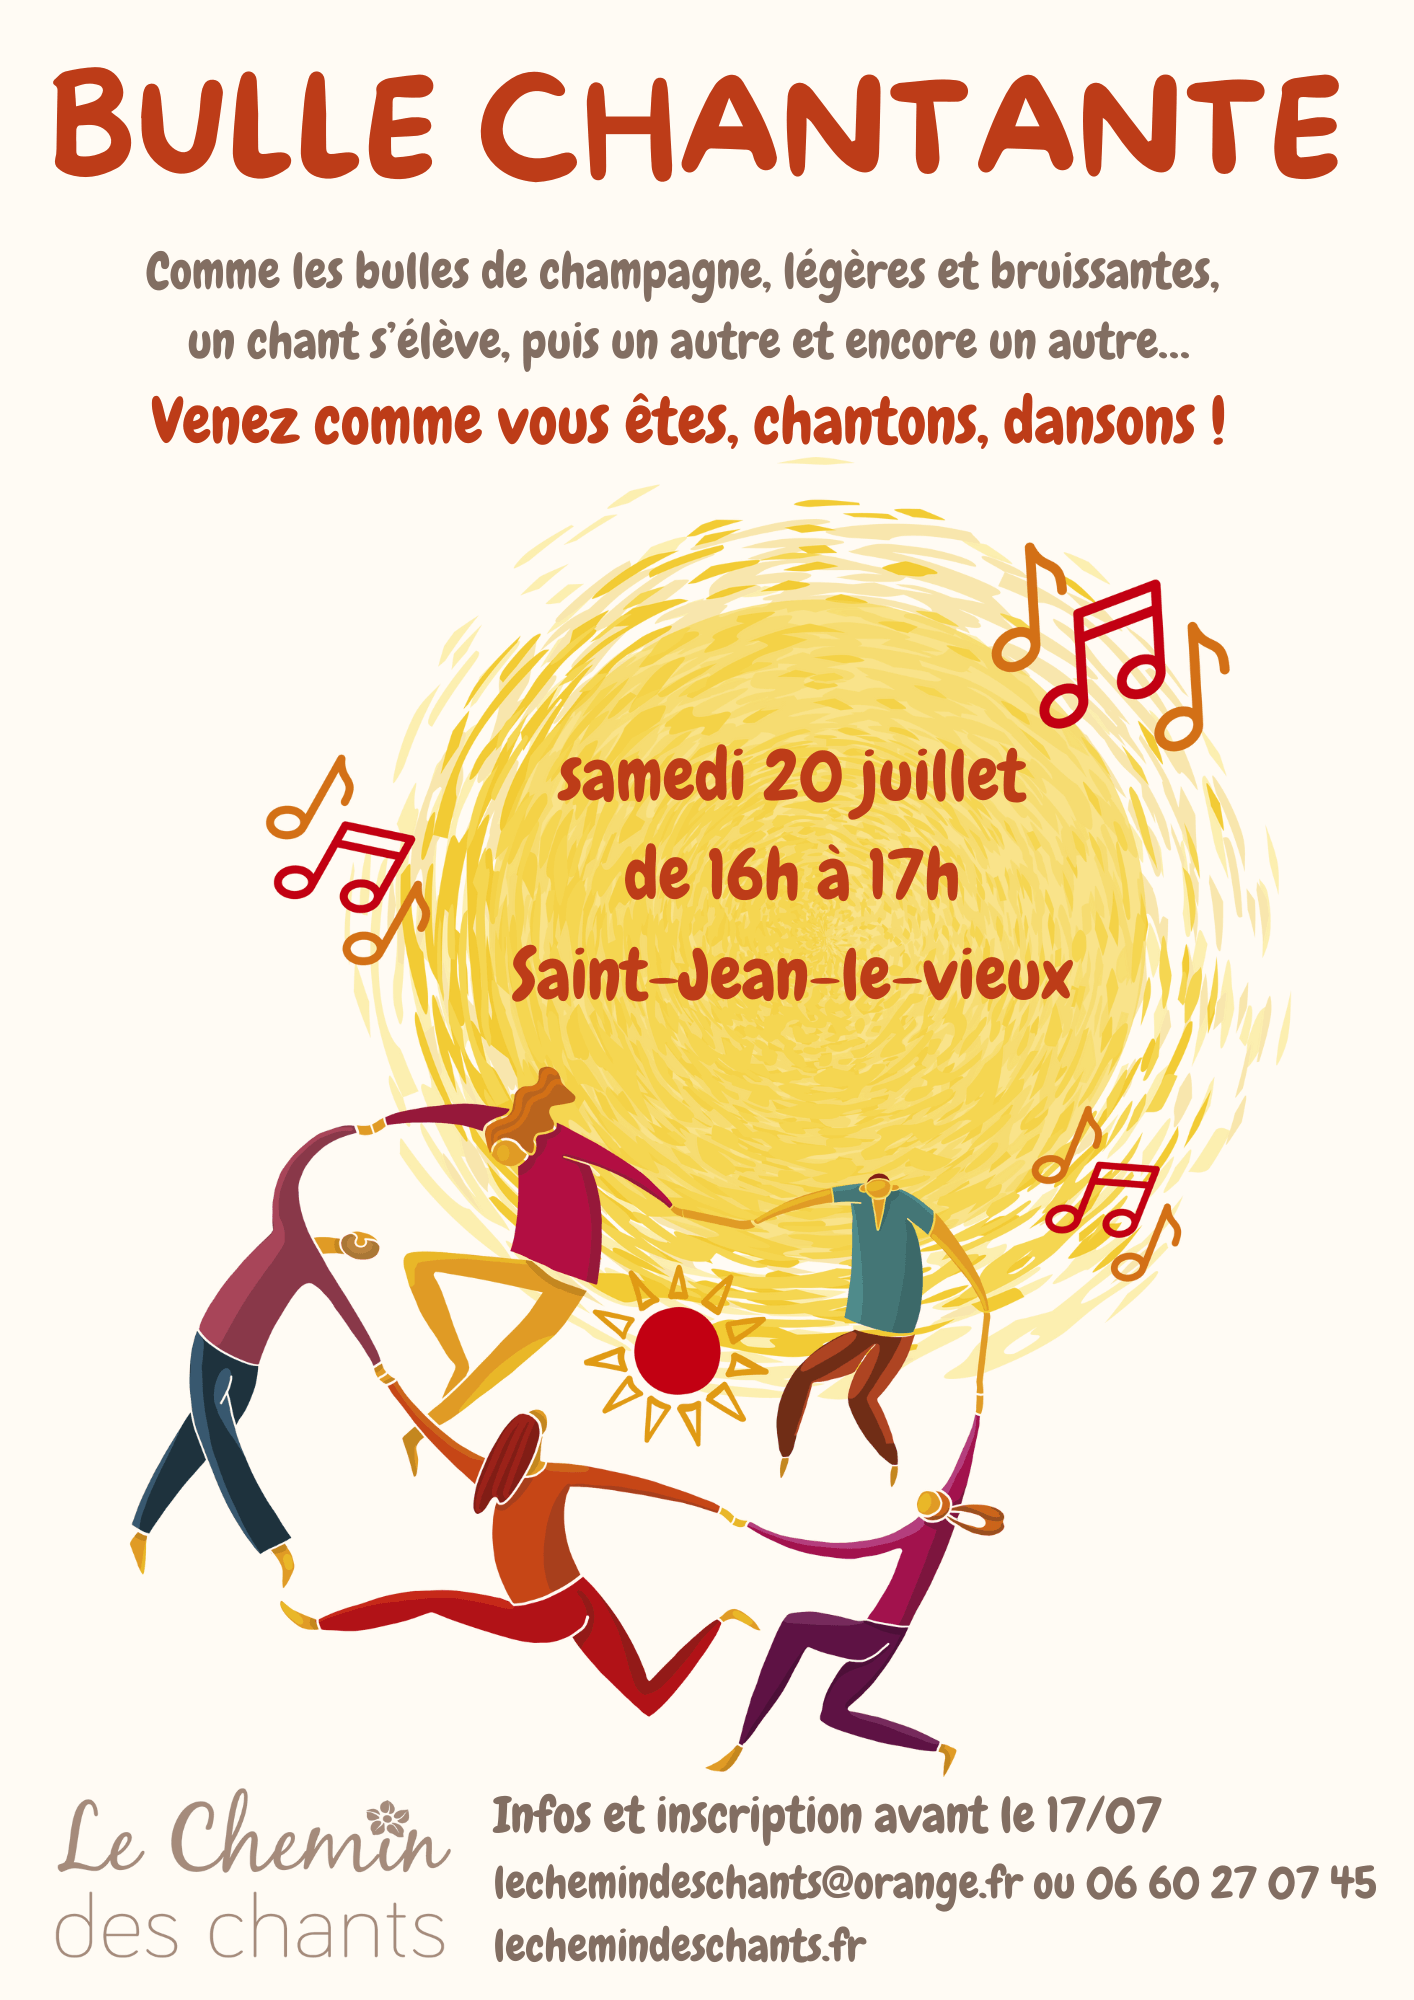 Participez à la bulle chantante le samedi 20 juillet à Saint-Jean-le-Vieux